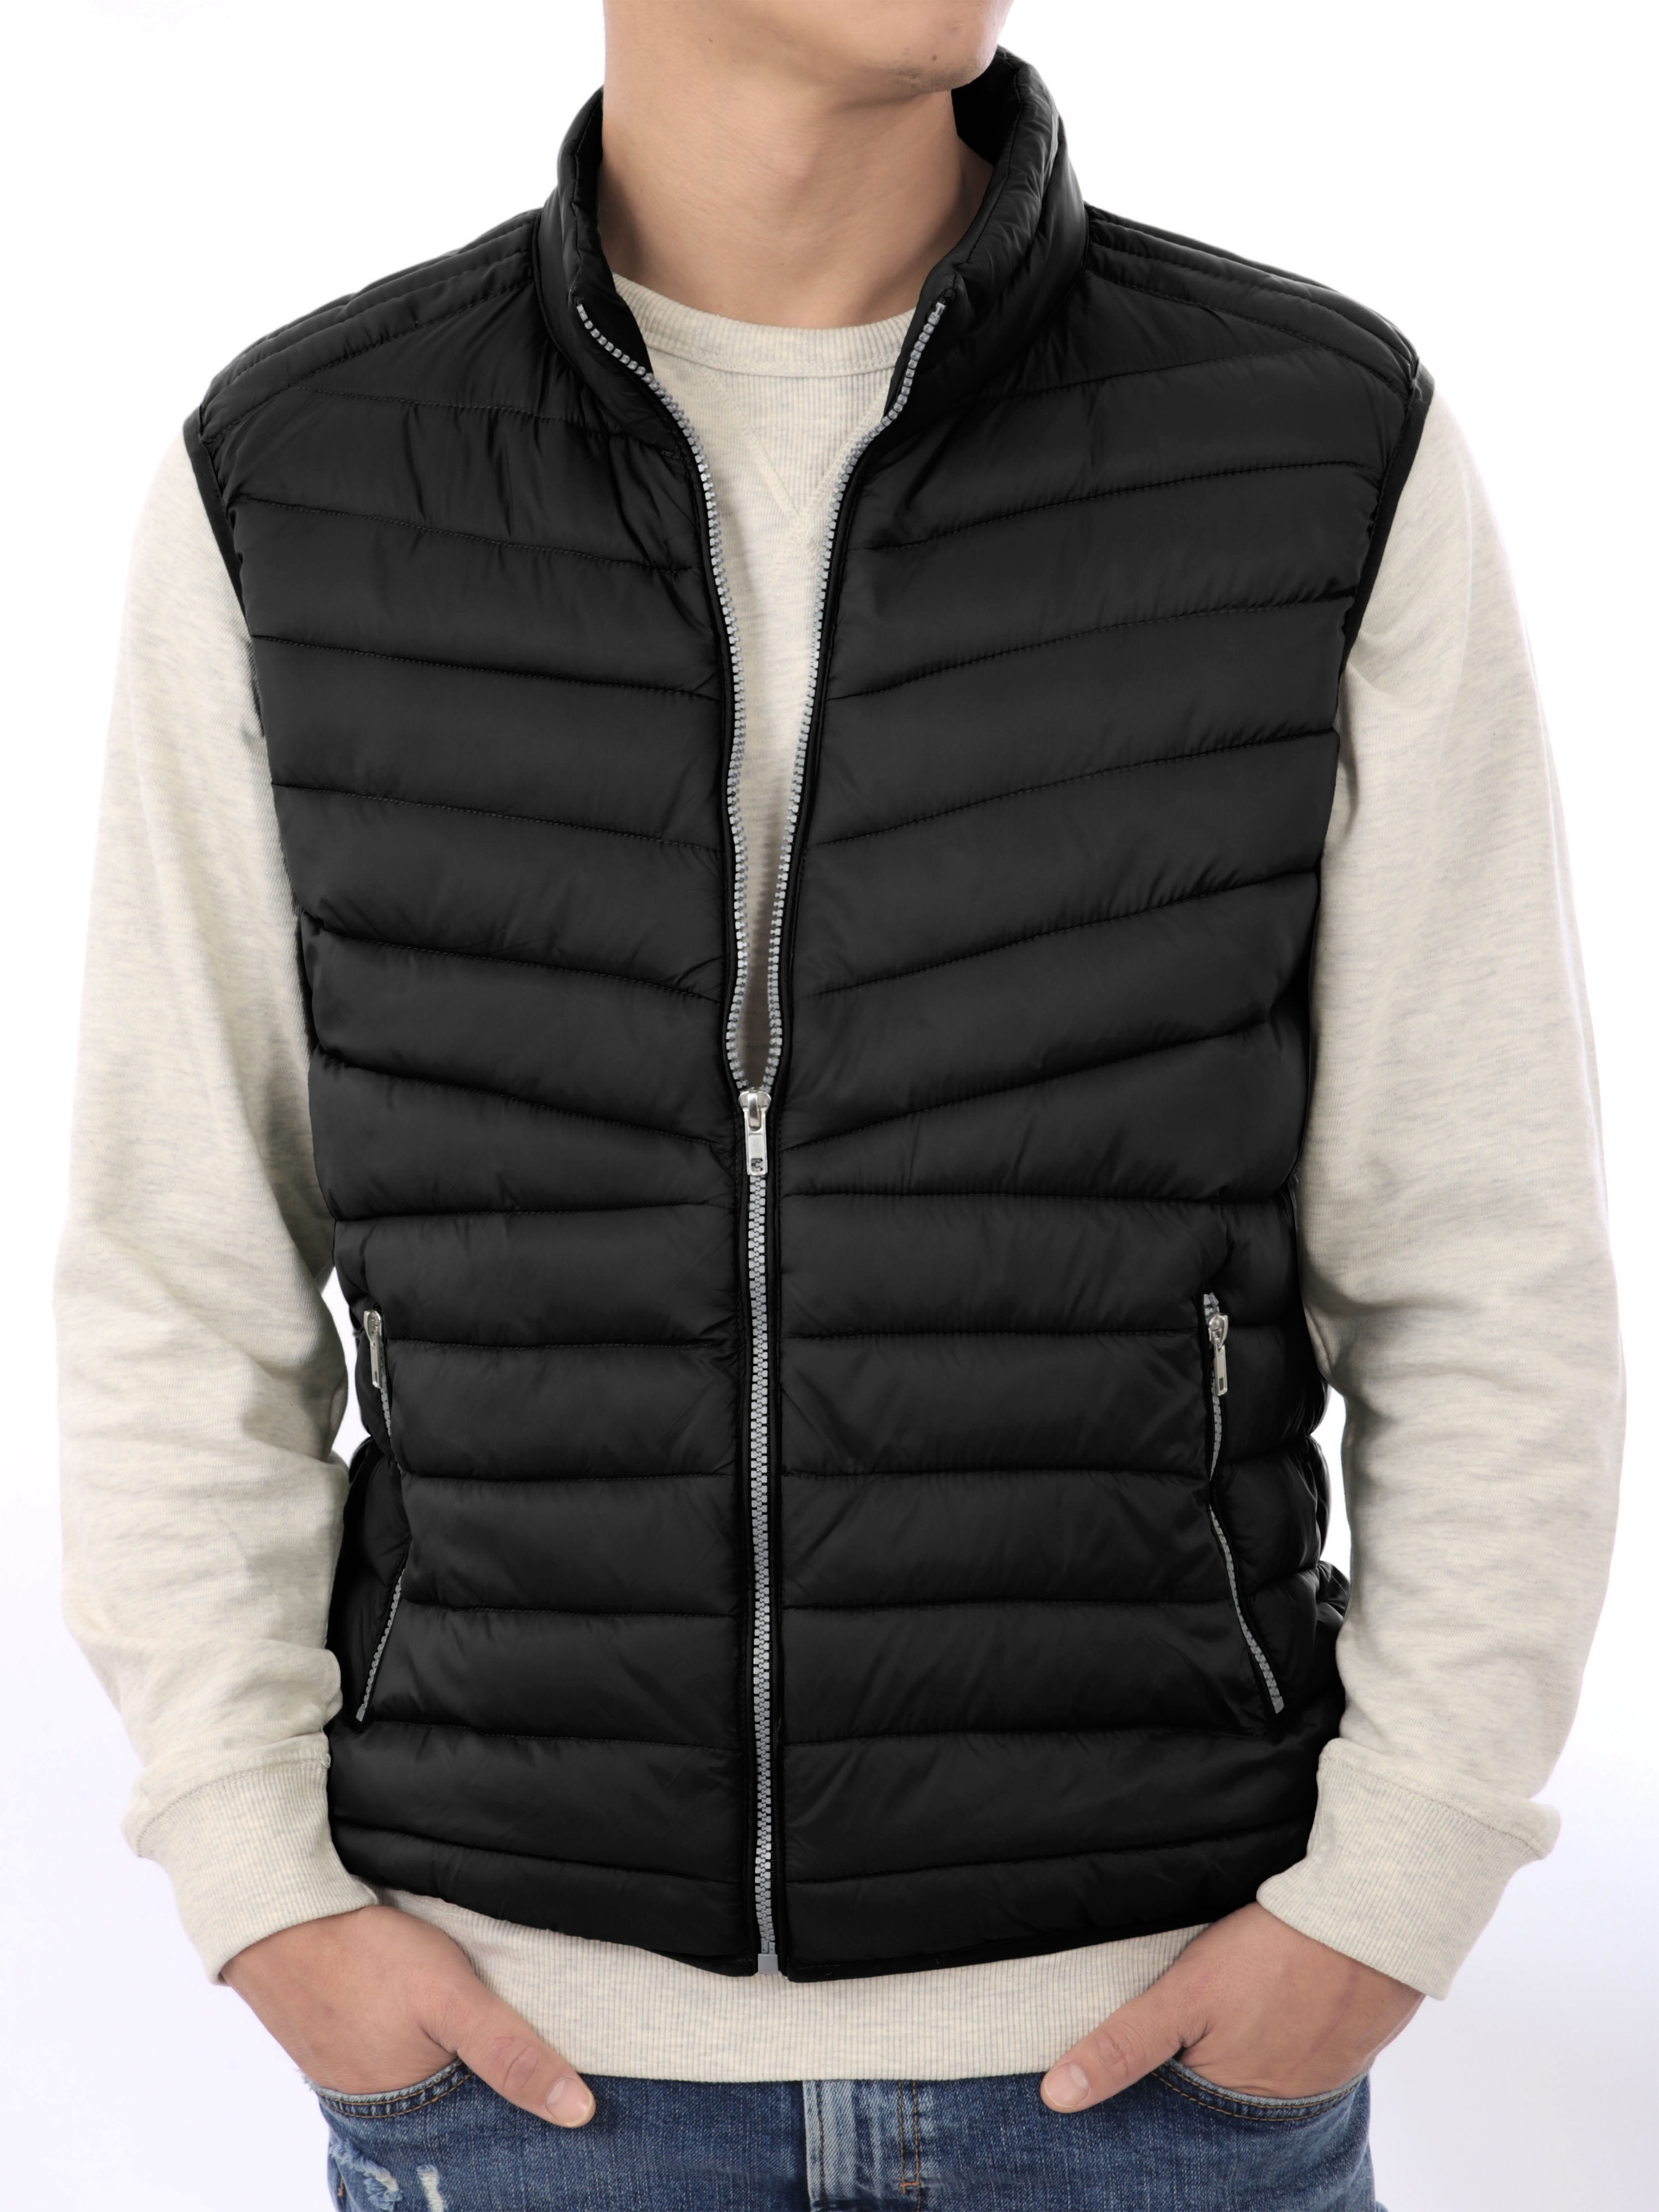 6762 Men's Ultralight Down Jacket Vest Duffel Coat Sleeveless Outdoor Waistcoat 